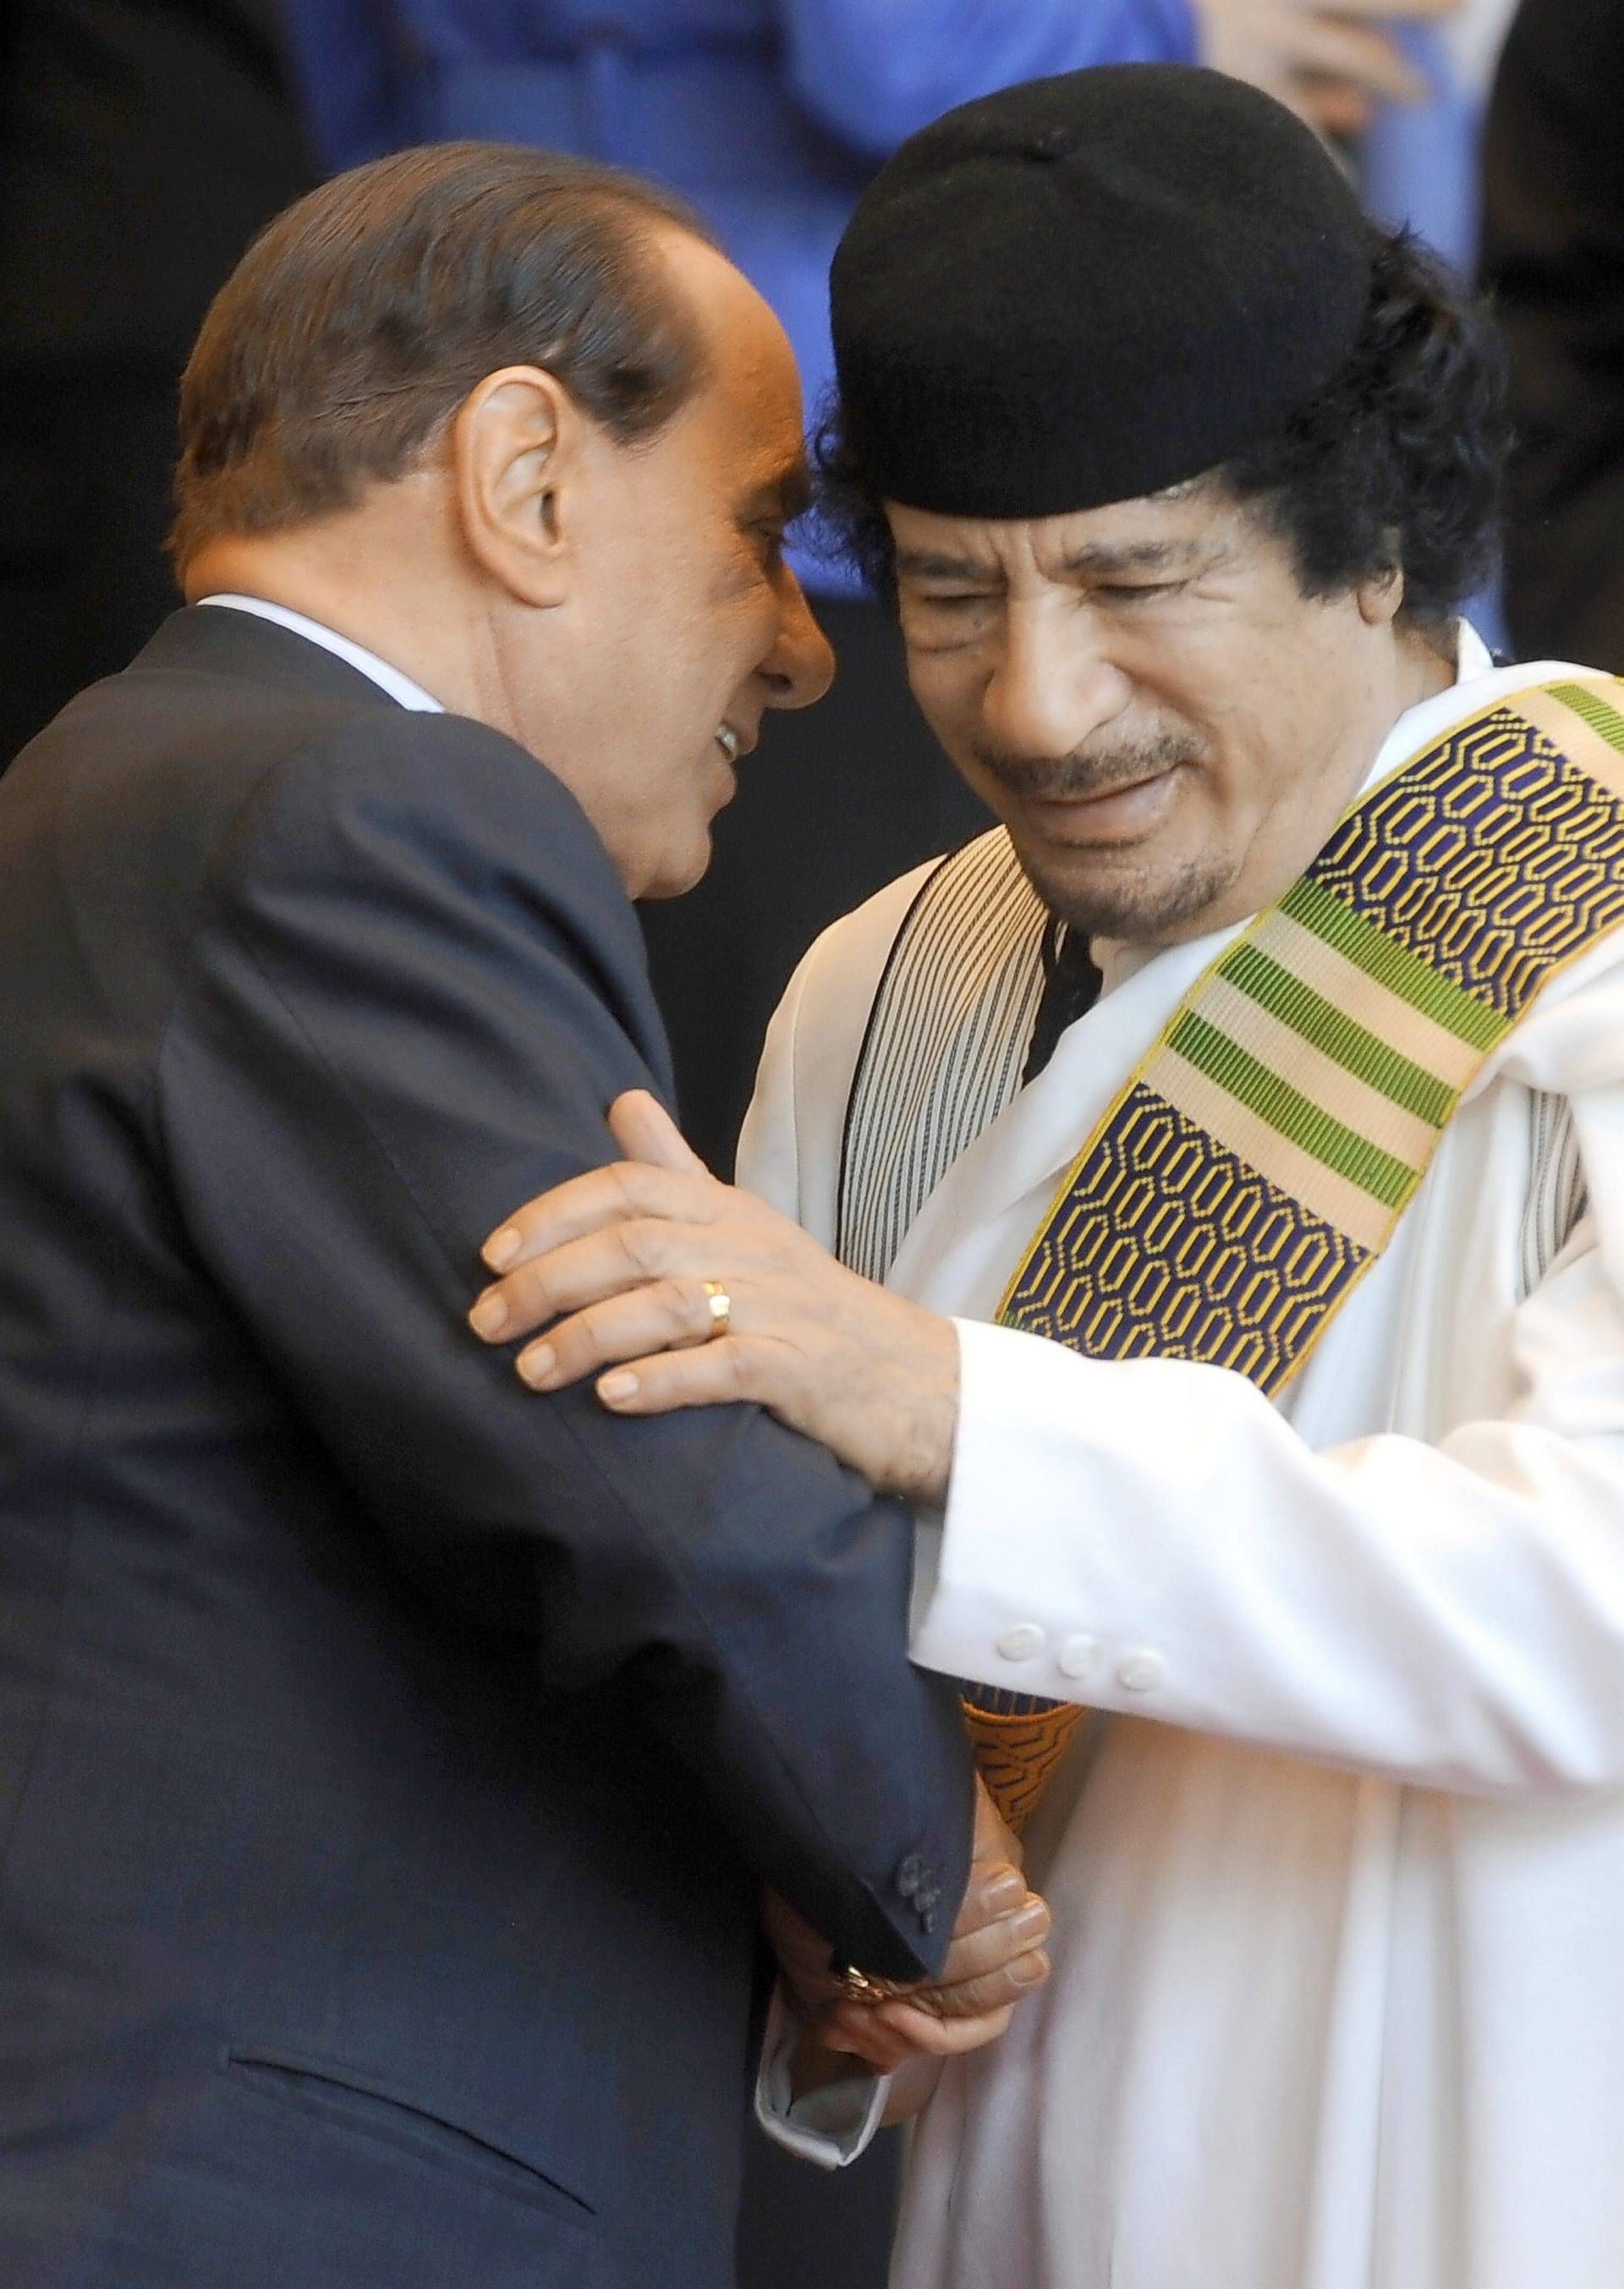 2010 traf Berlusconi den damaligen Diktator Libyens, Muammar al-Gaddafi. Ein Jahr später wurde Gaddafi im Zusammenhang mit den landesweiten Aufständen in Libyen getötet.